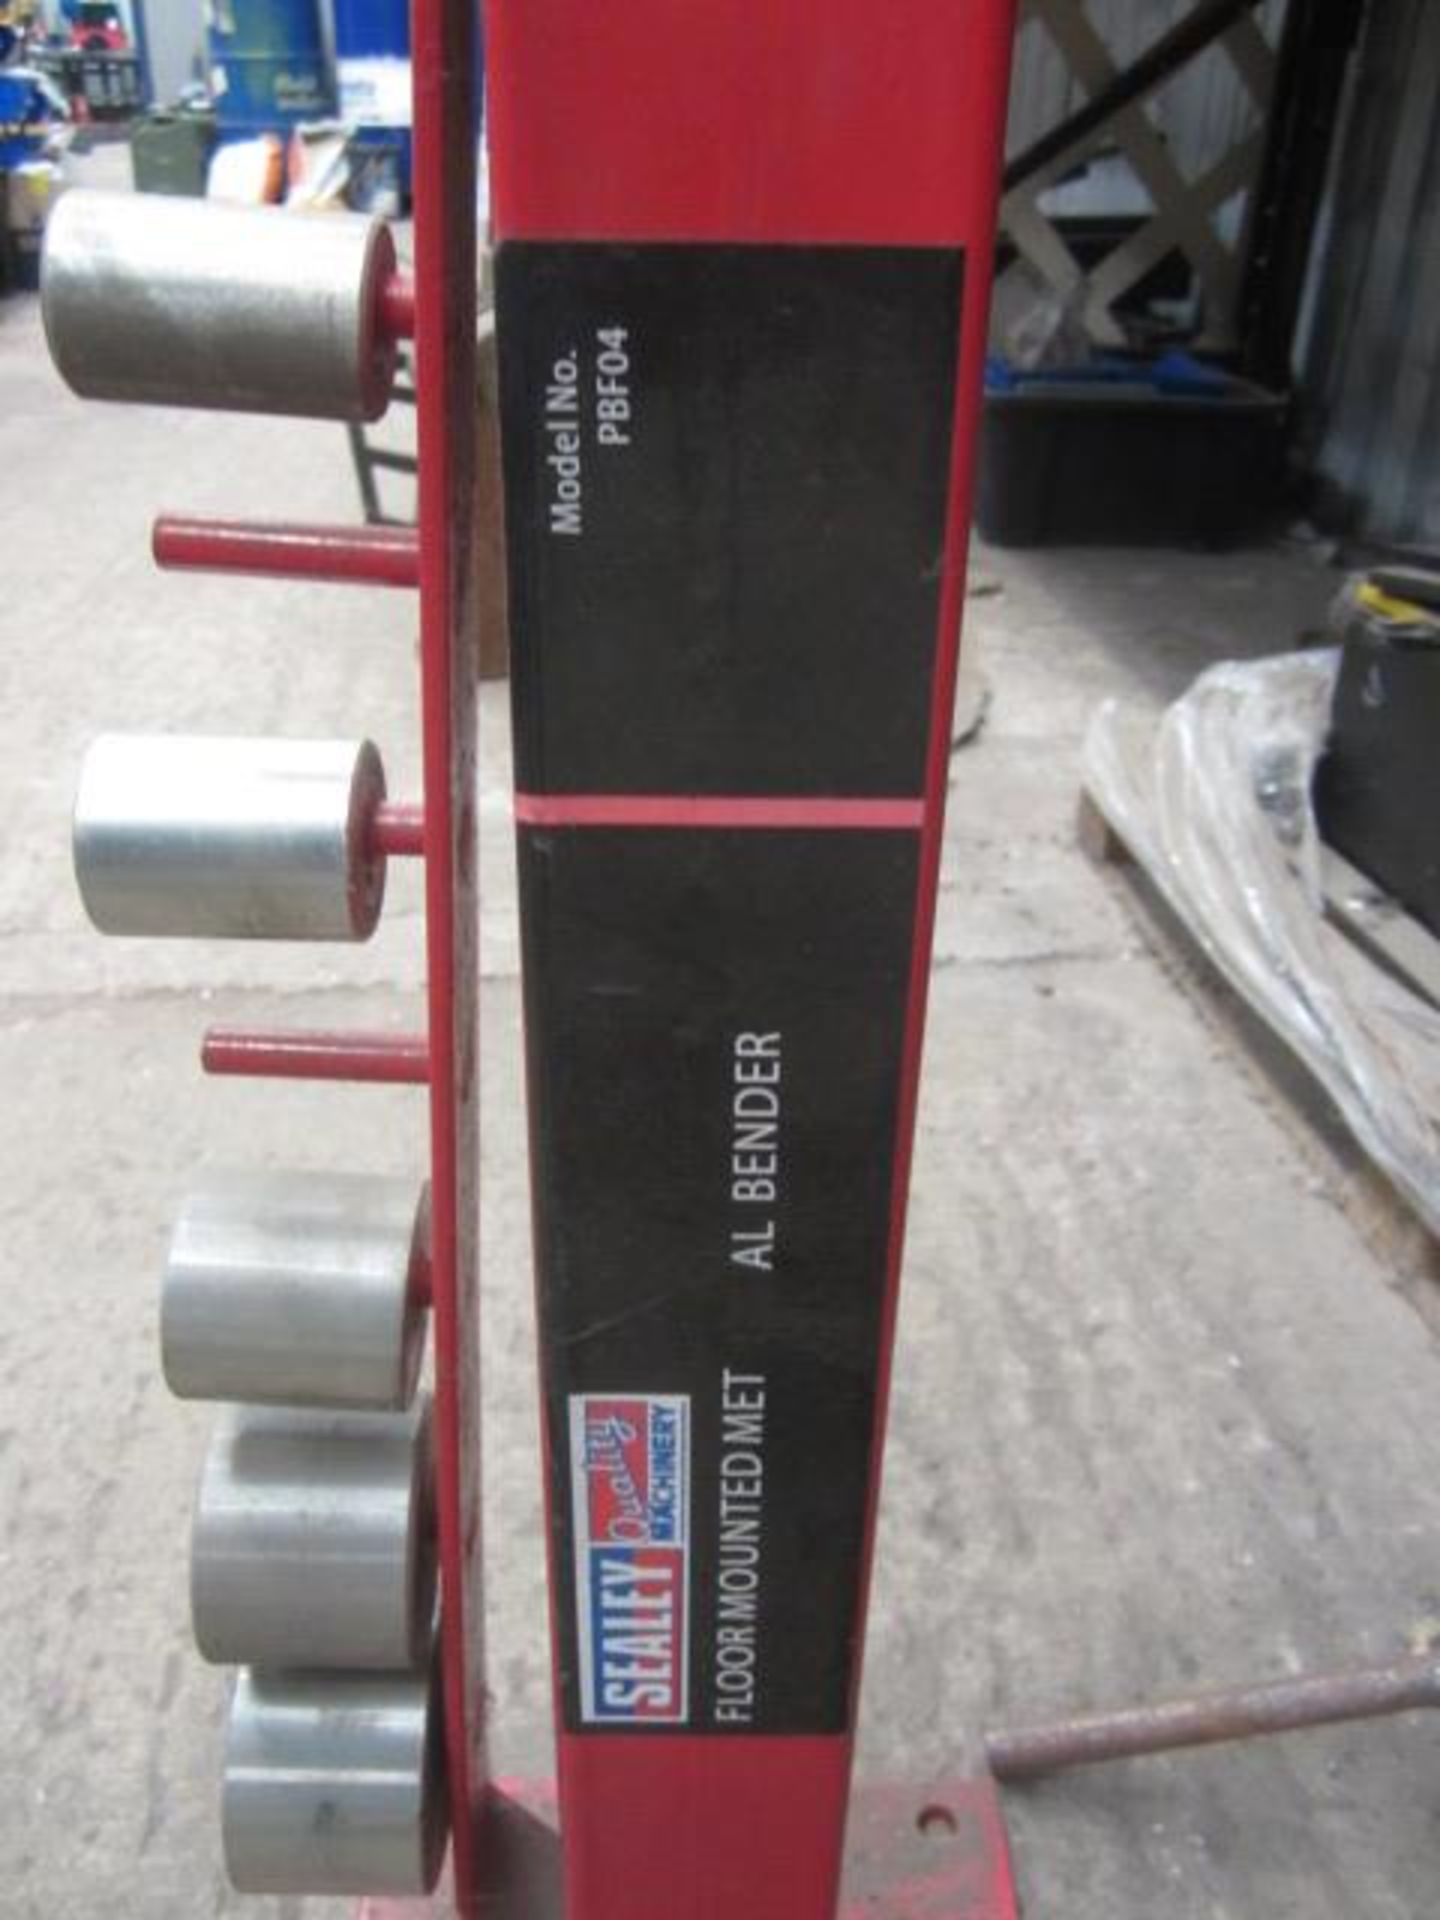 Sealey floor mounted metal bender, model PBF04 - Image 3 of 4